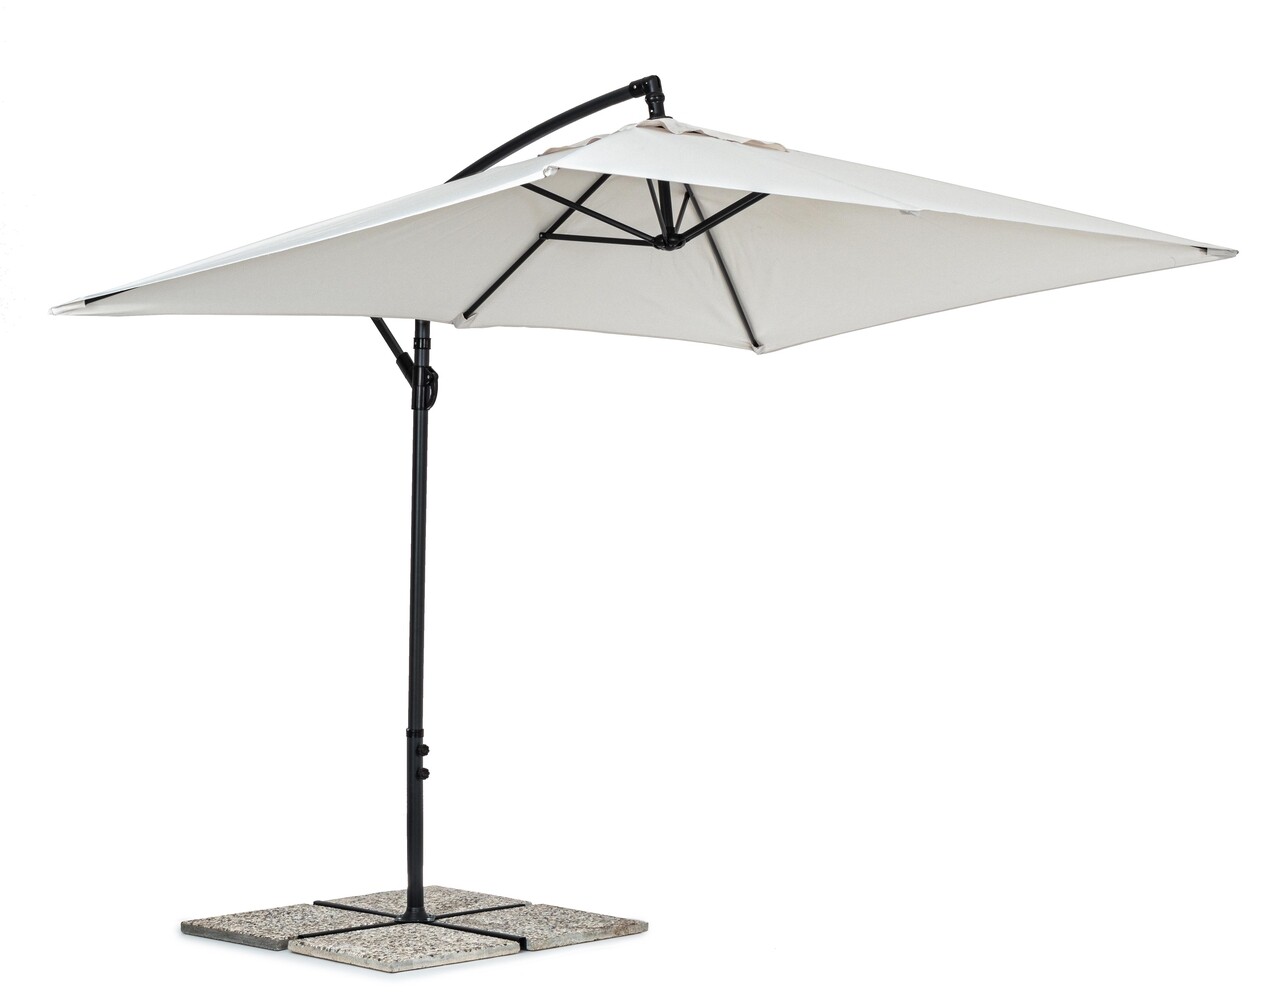 Texas Terasz/kerti napernyő, Bizzotto, 300 x 200 x 260 cm, oszlop 48 mm, 360° forgó oszlop, acél/poliészter, természetes